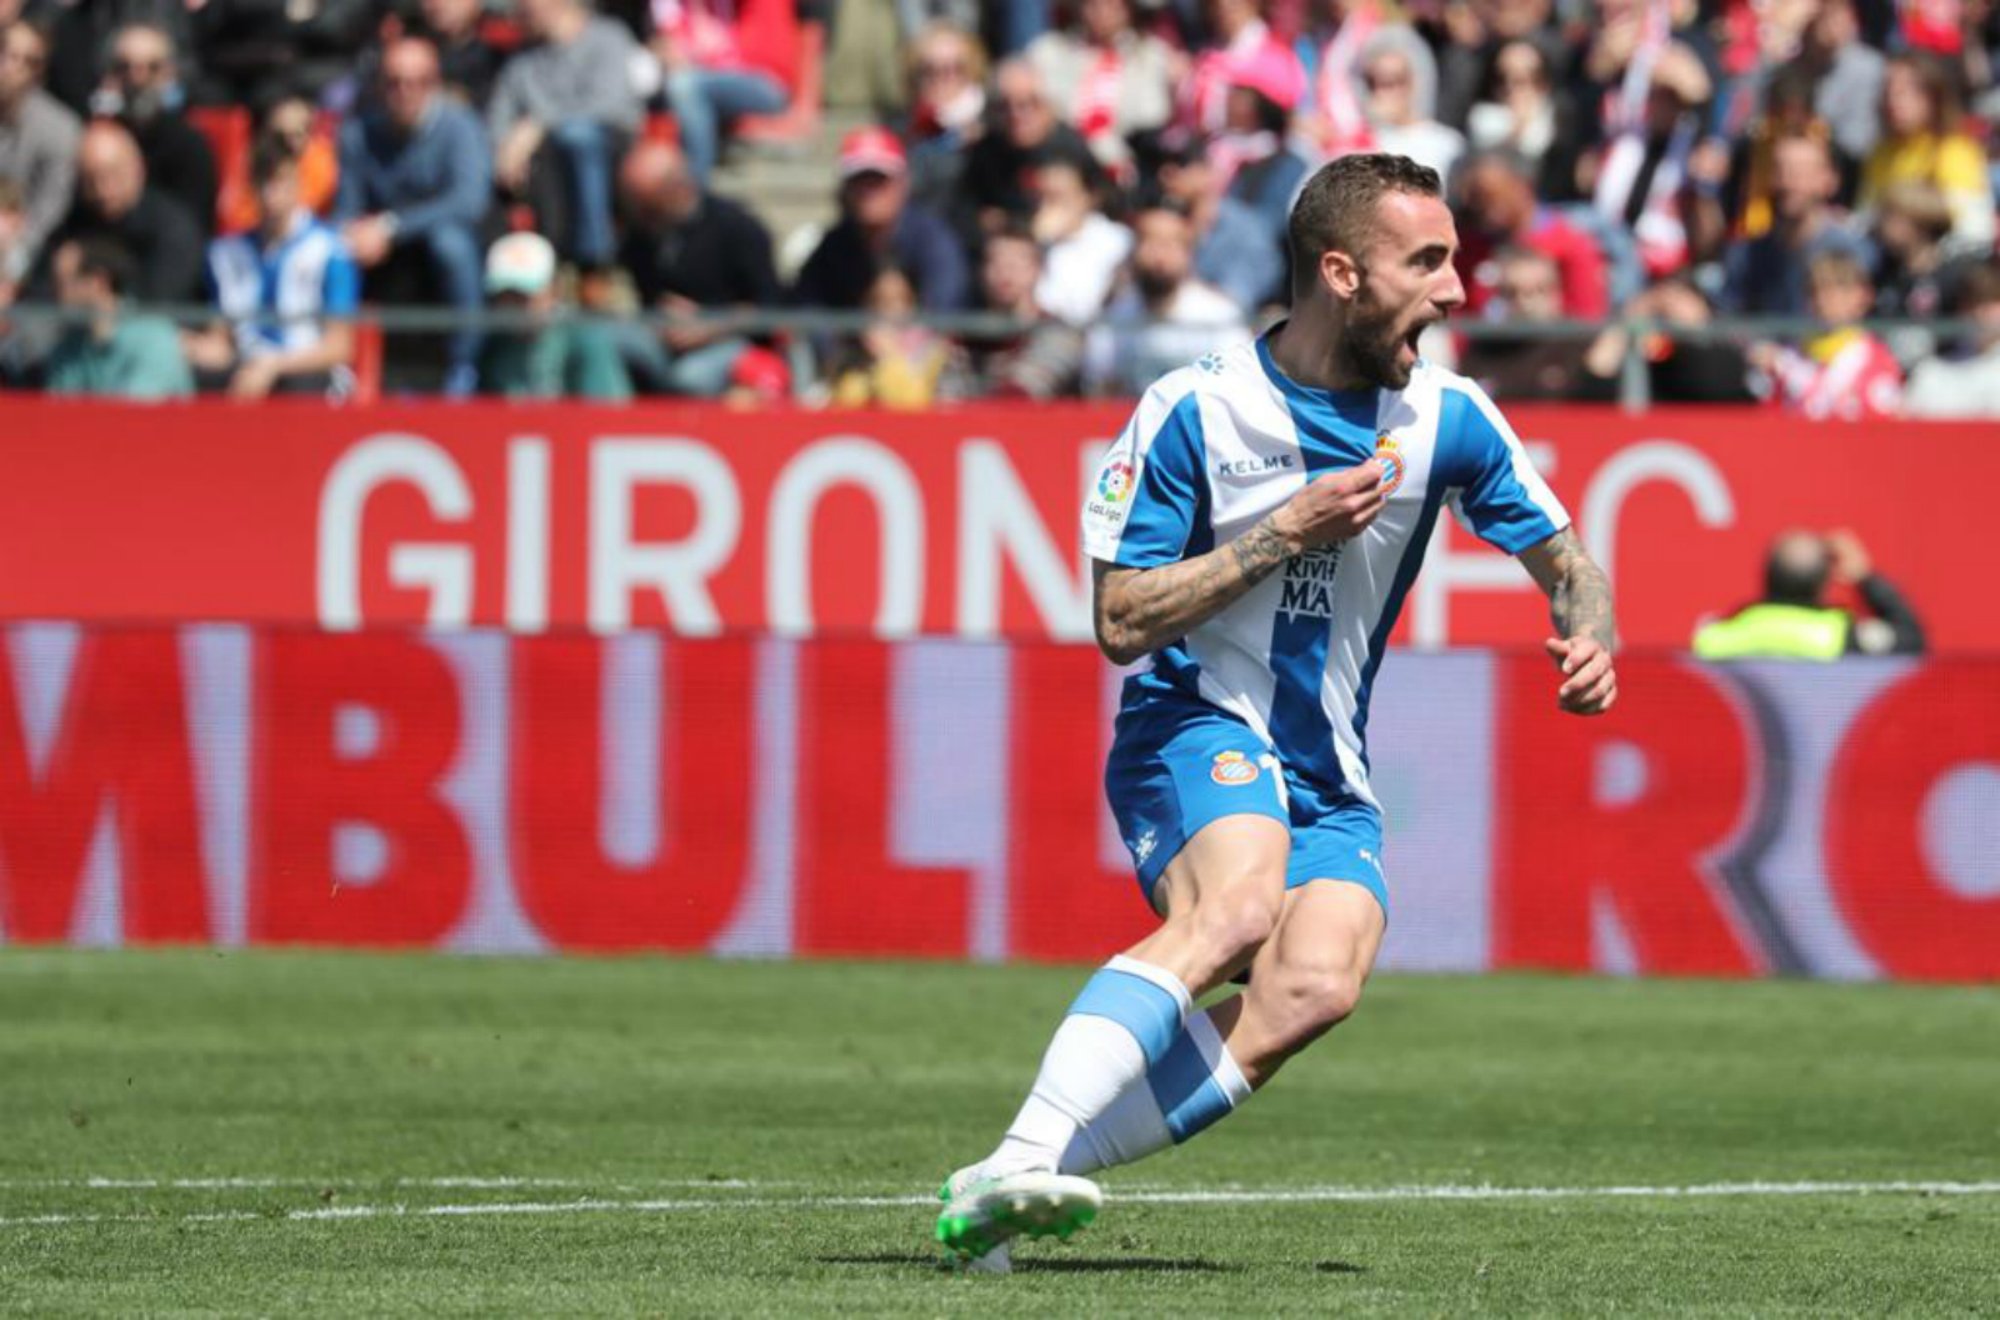 La fortuna i Darder decideixen la victòria de l'Espanyol a Girona (1-2)